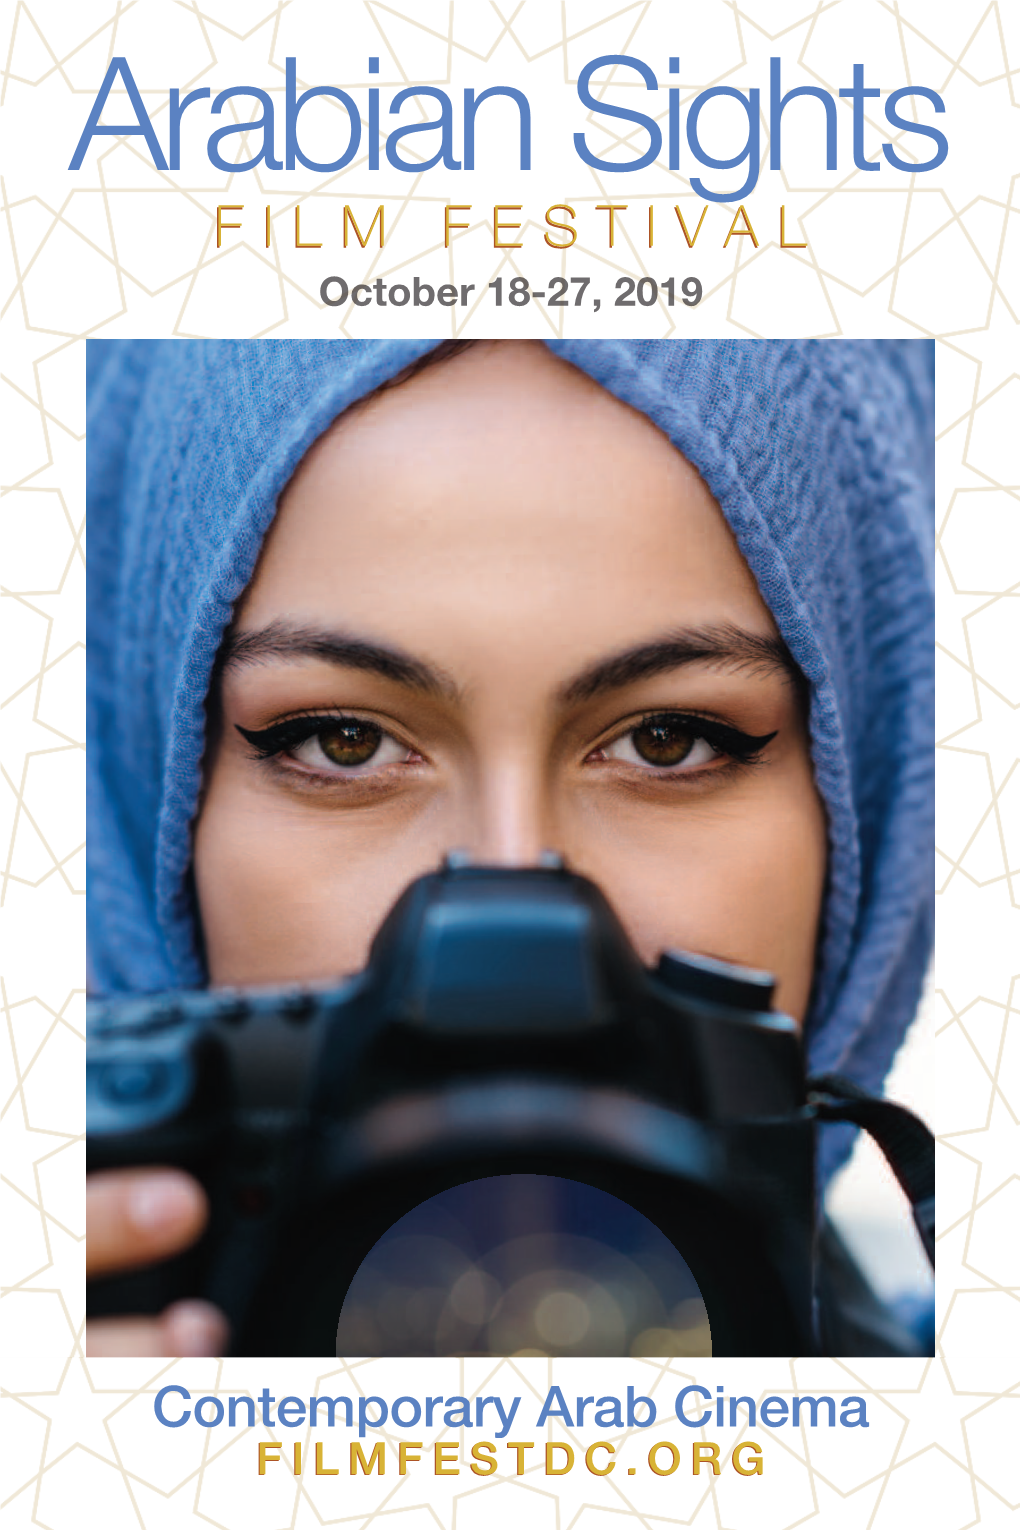 Arabian Sights Film Festival October 18-27, 2019